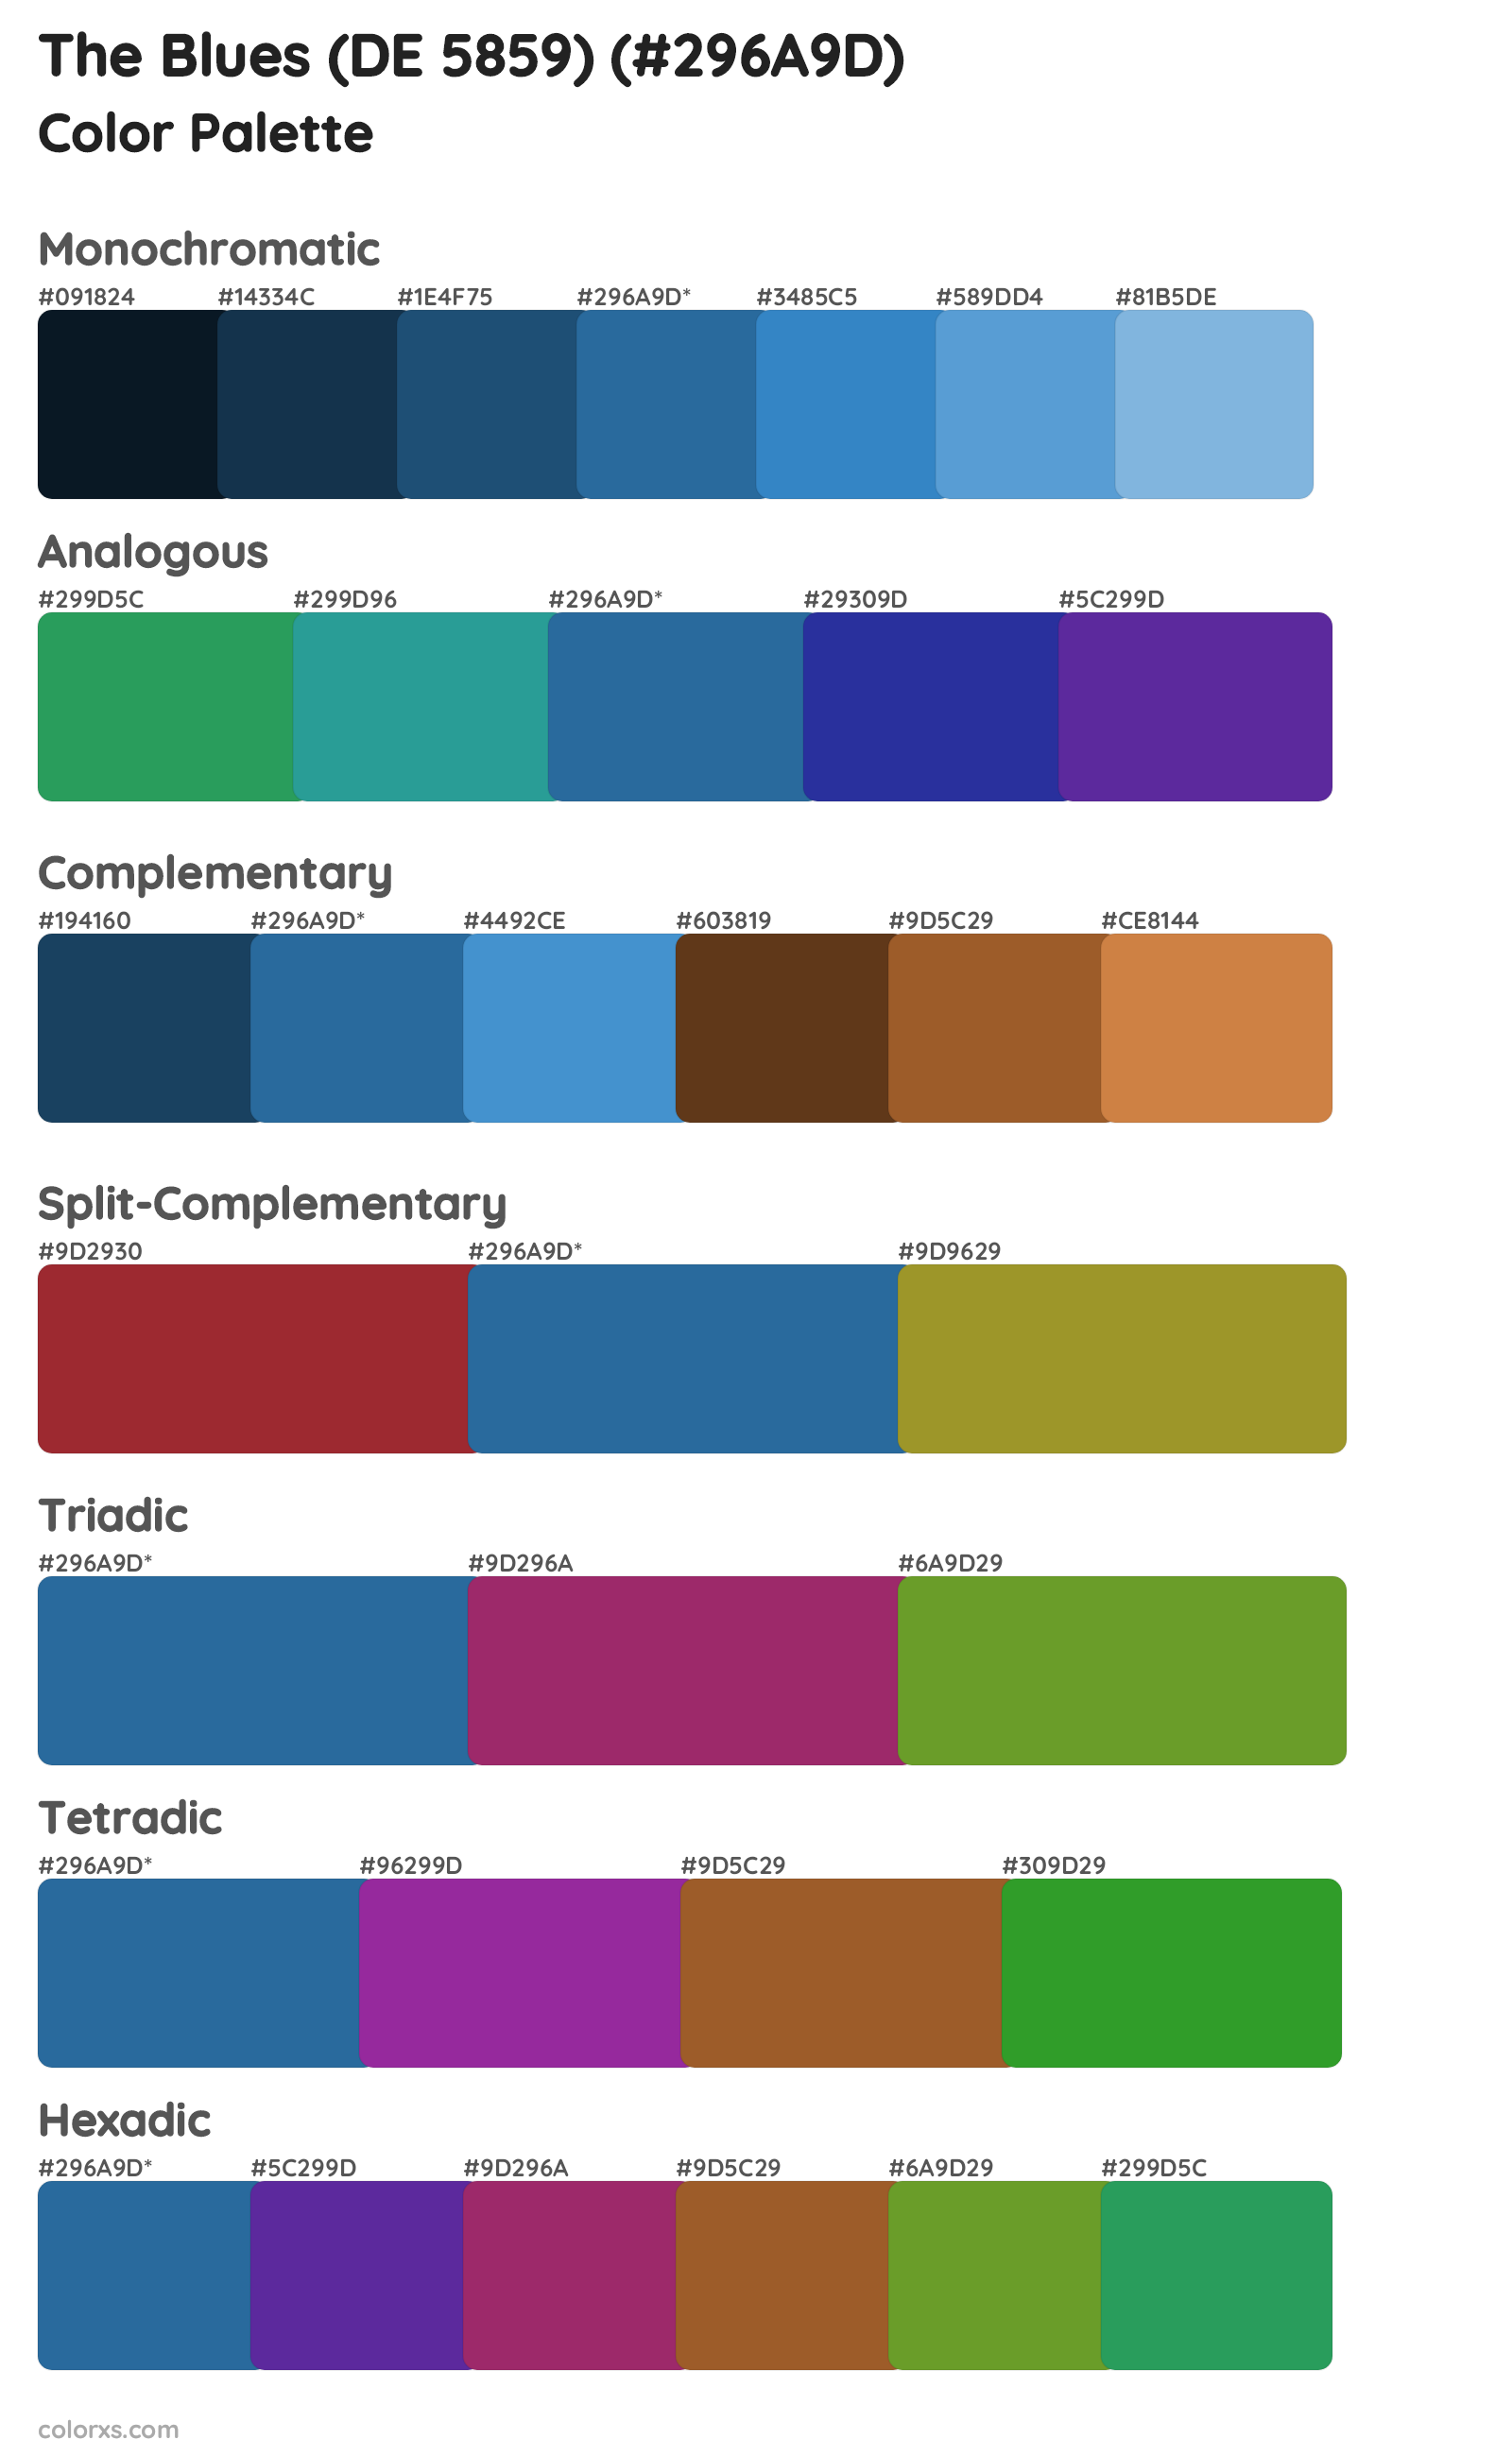 The Blues (DE 5859) Color Scheme Palettes